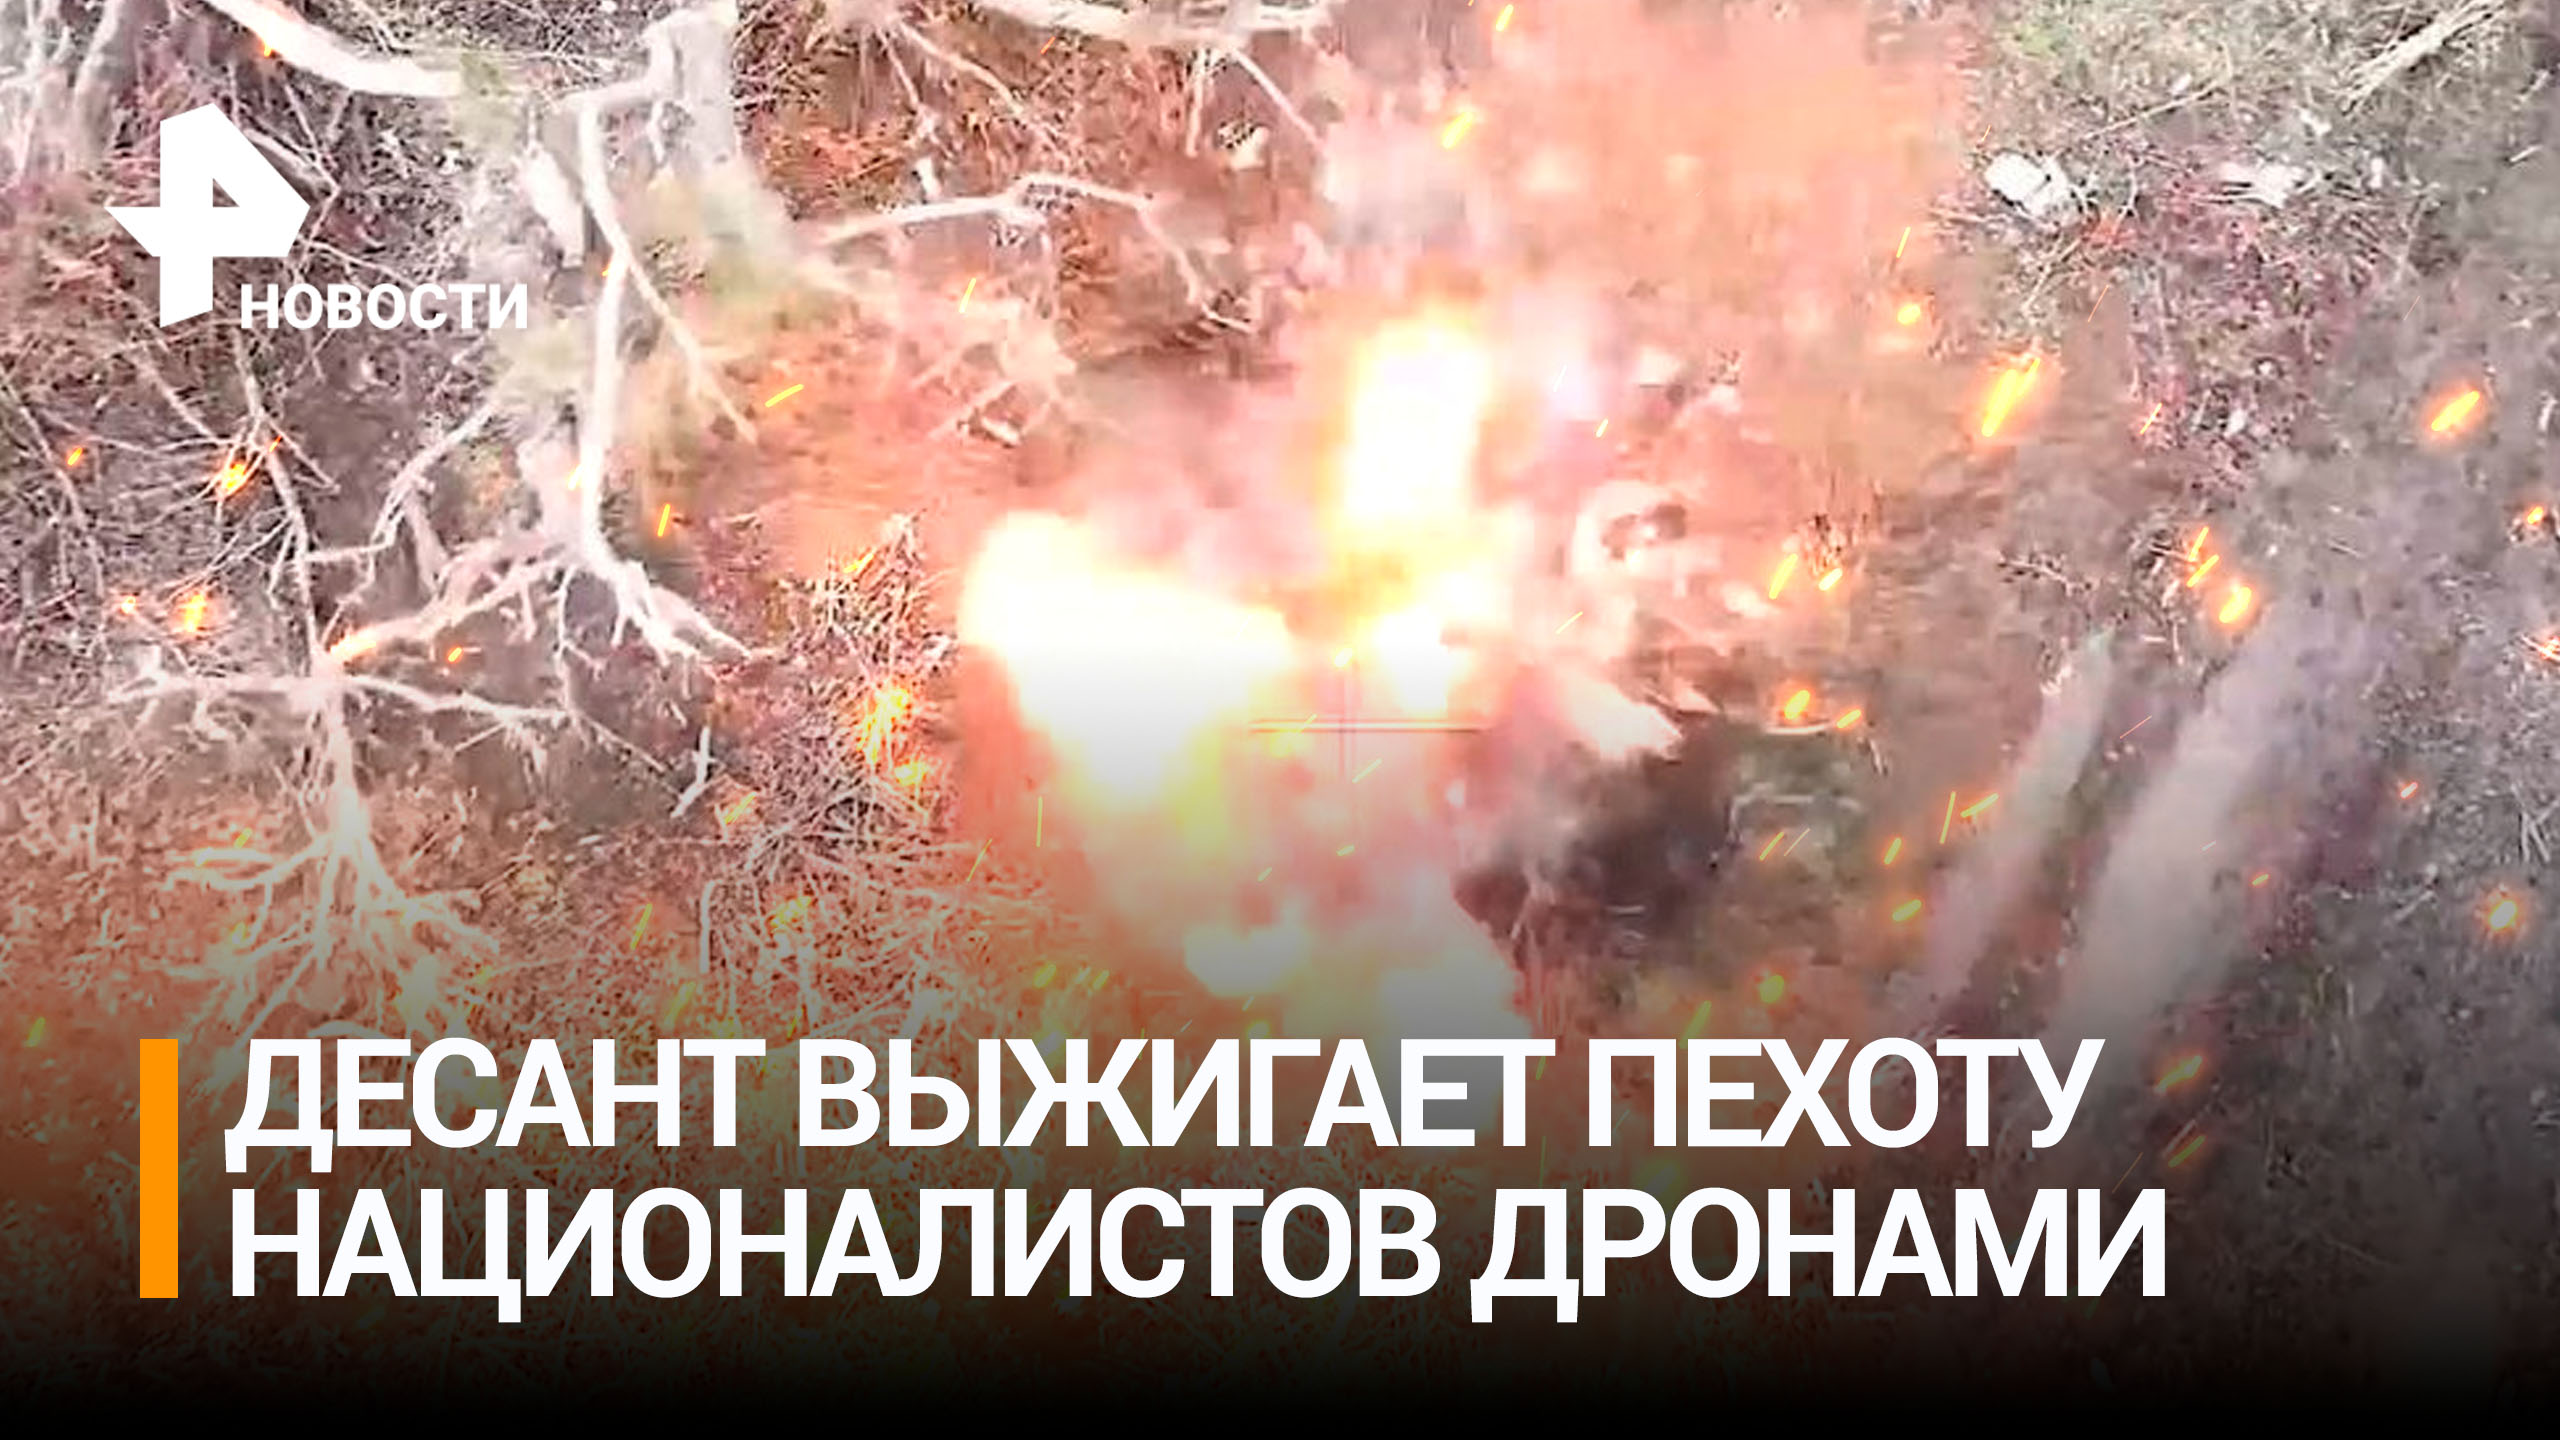 Десантники с помощью ударных дронов уничтожили пехоту ВСУ / РЕН Новости